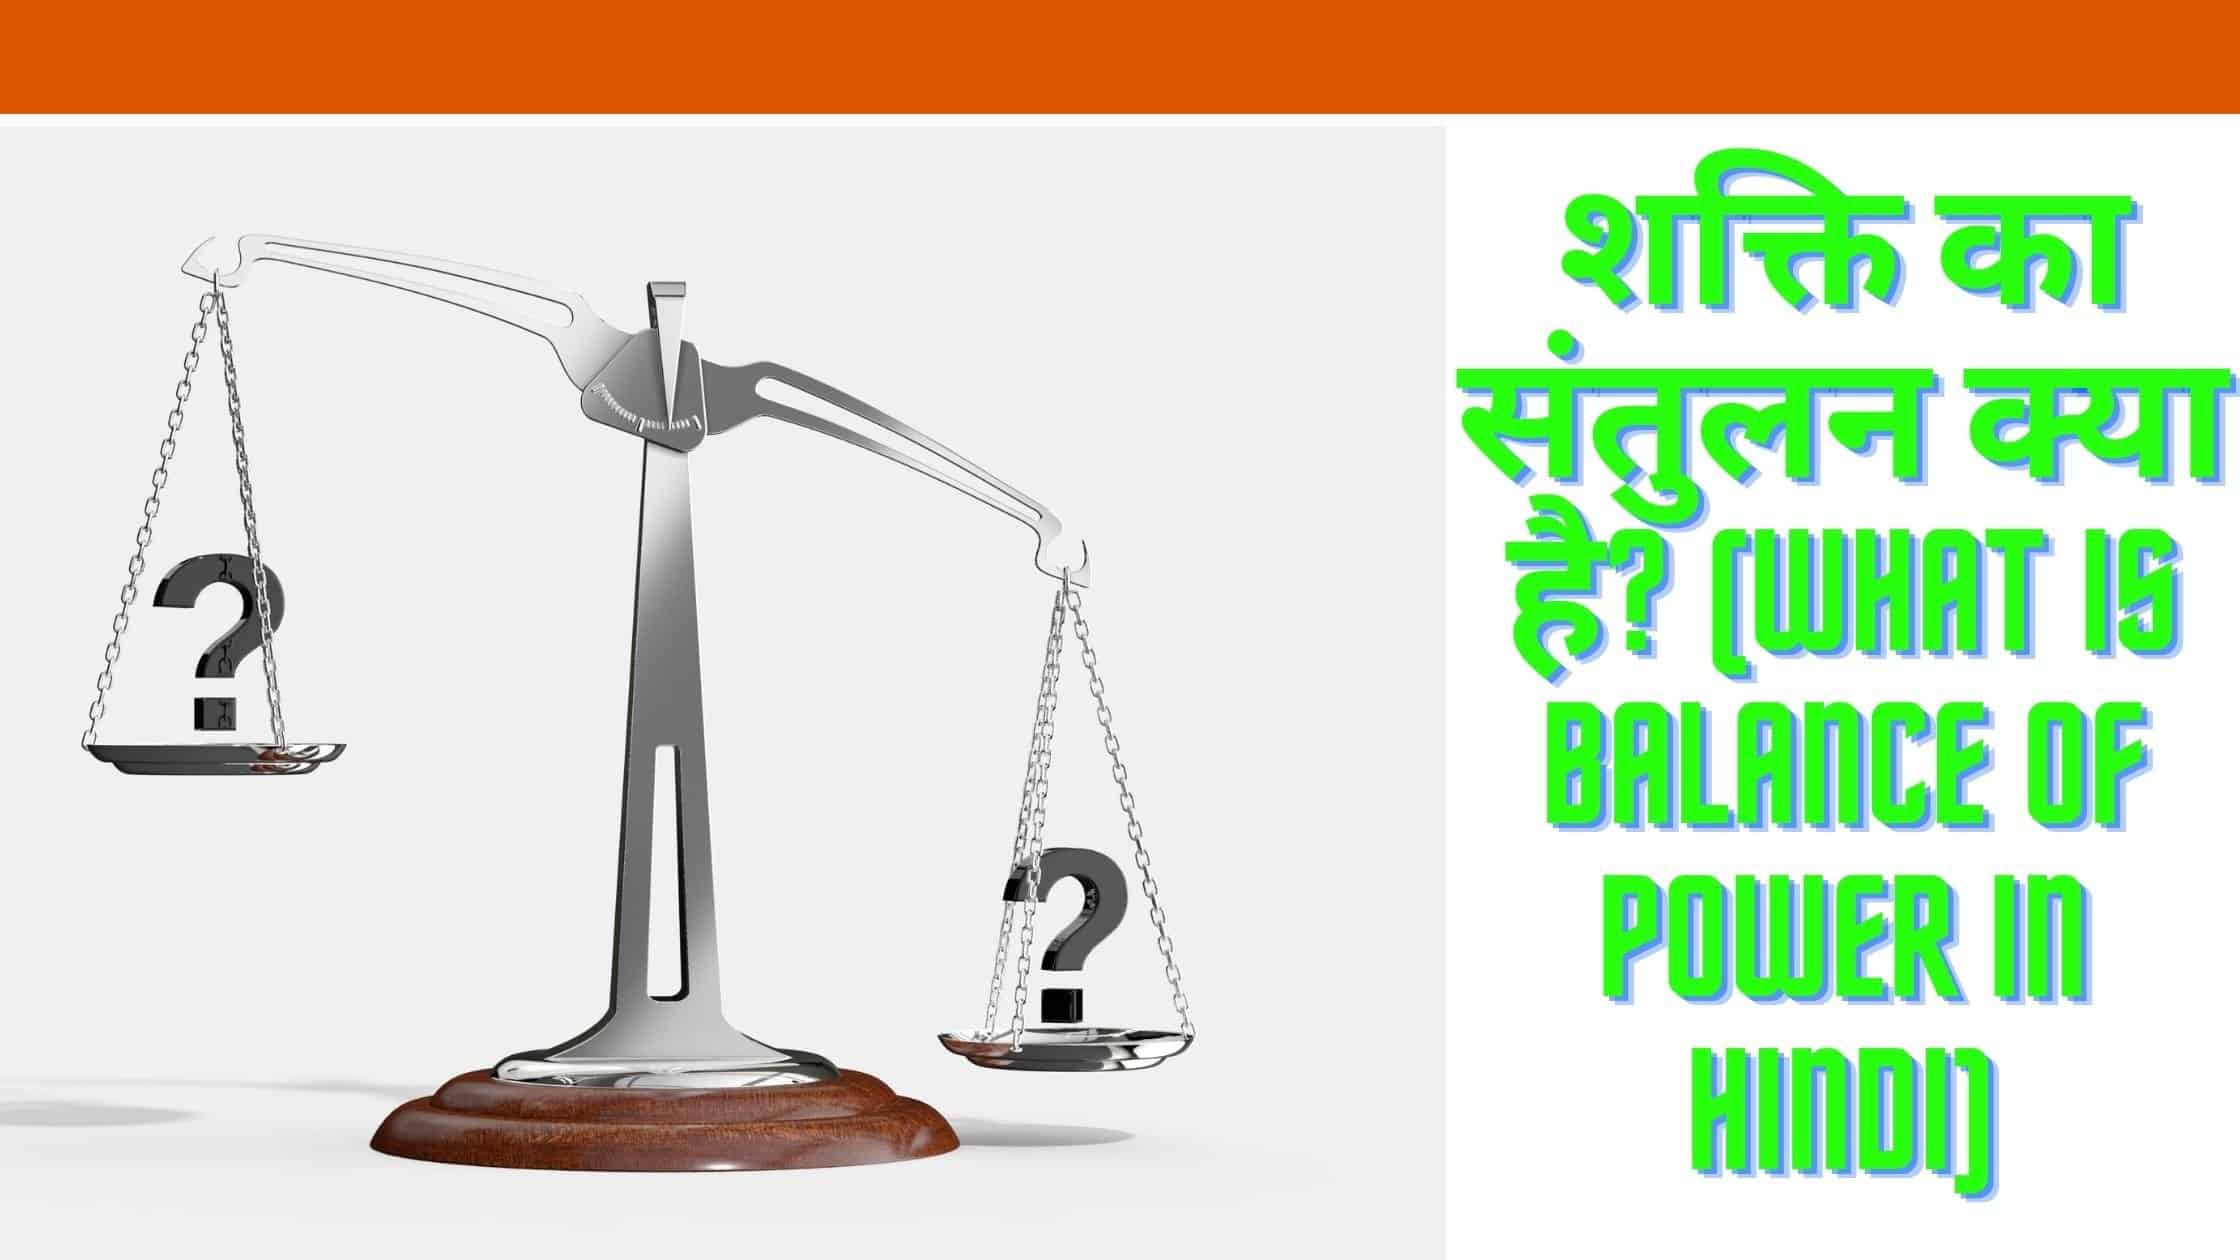 शक्ति का संतुलन क्या है? (what is Balance Of Power in hindi)